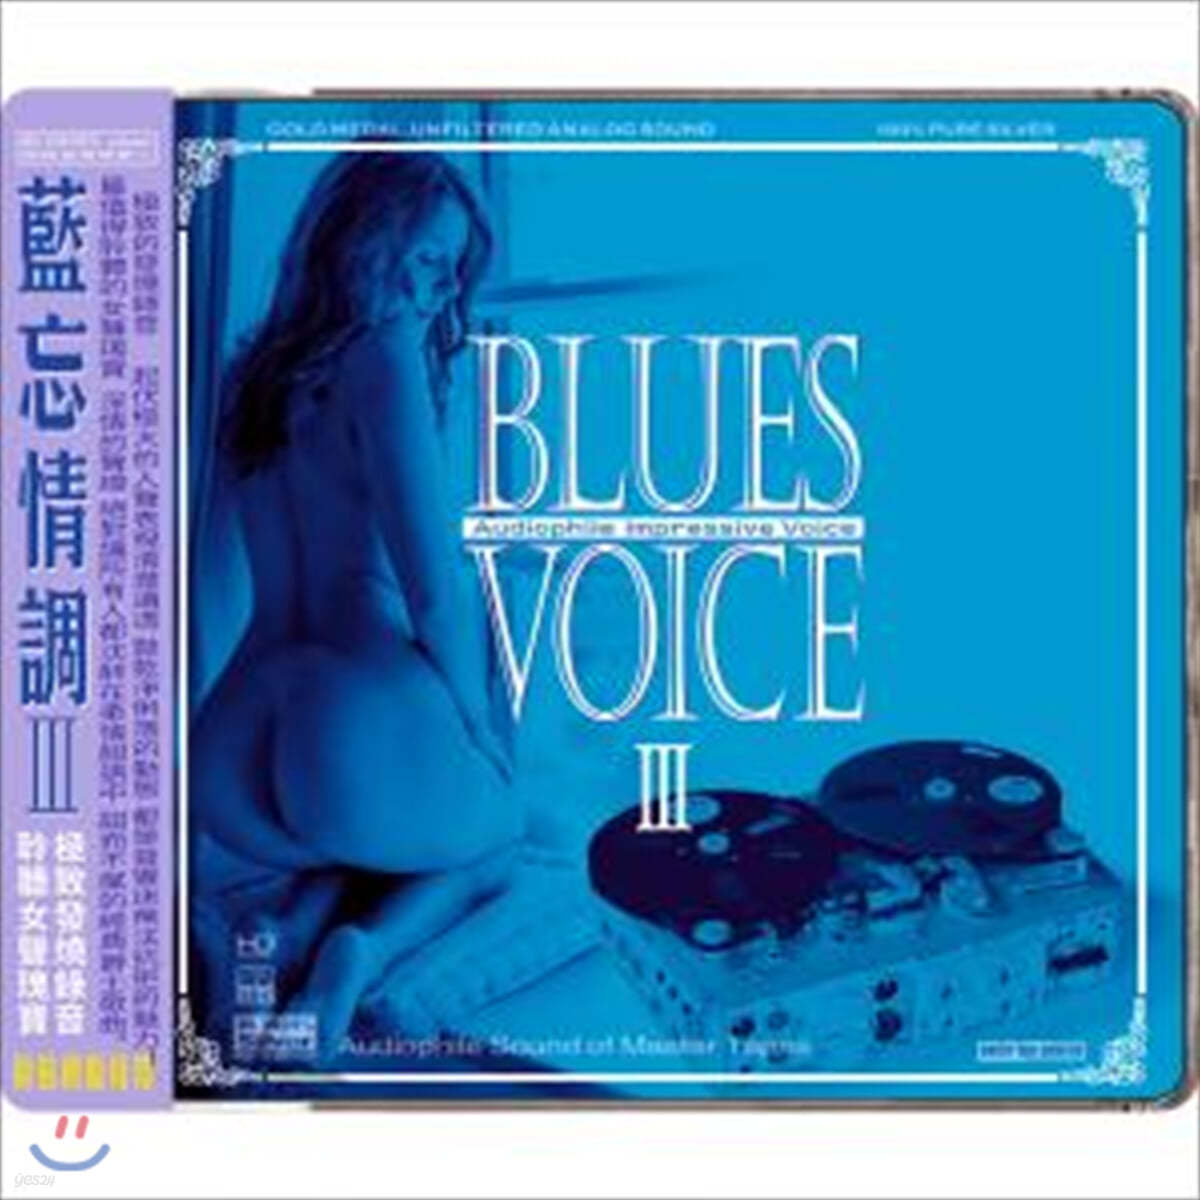 재즈, 블루스 보컬 컴필레이션 모음집 (Blues Voice 3 : Audiophile Impressive Voice) 